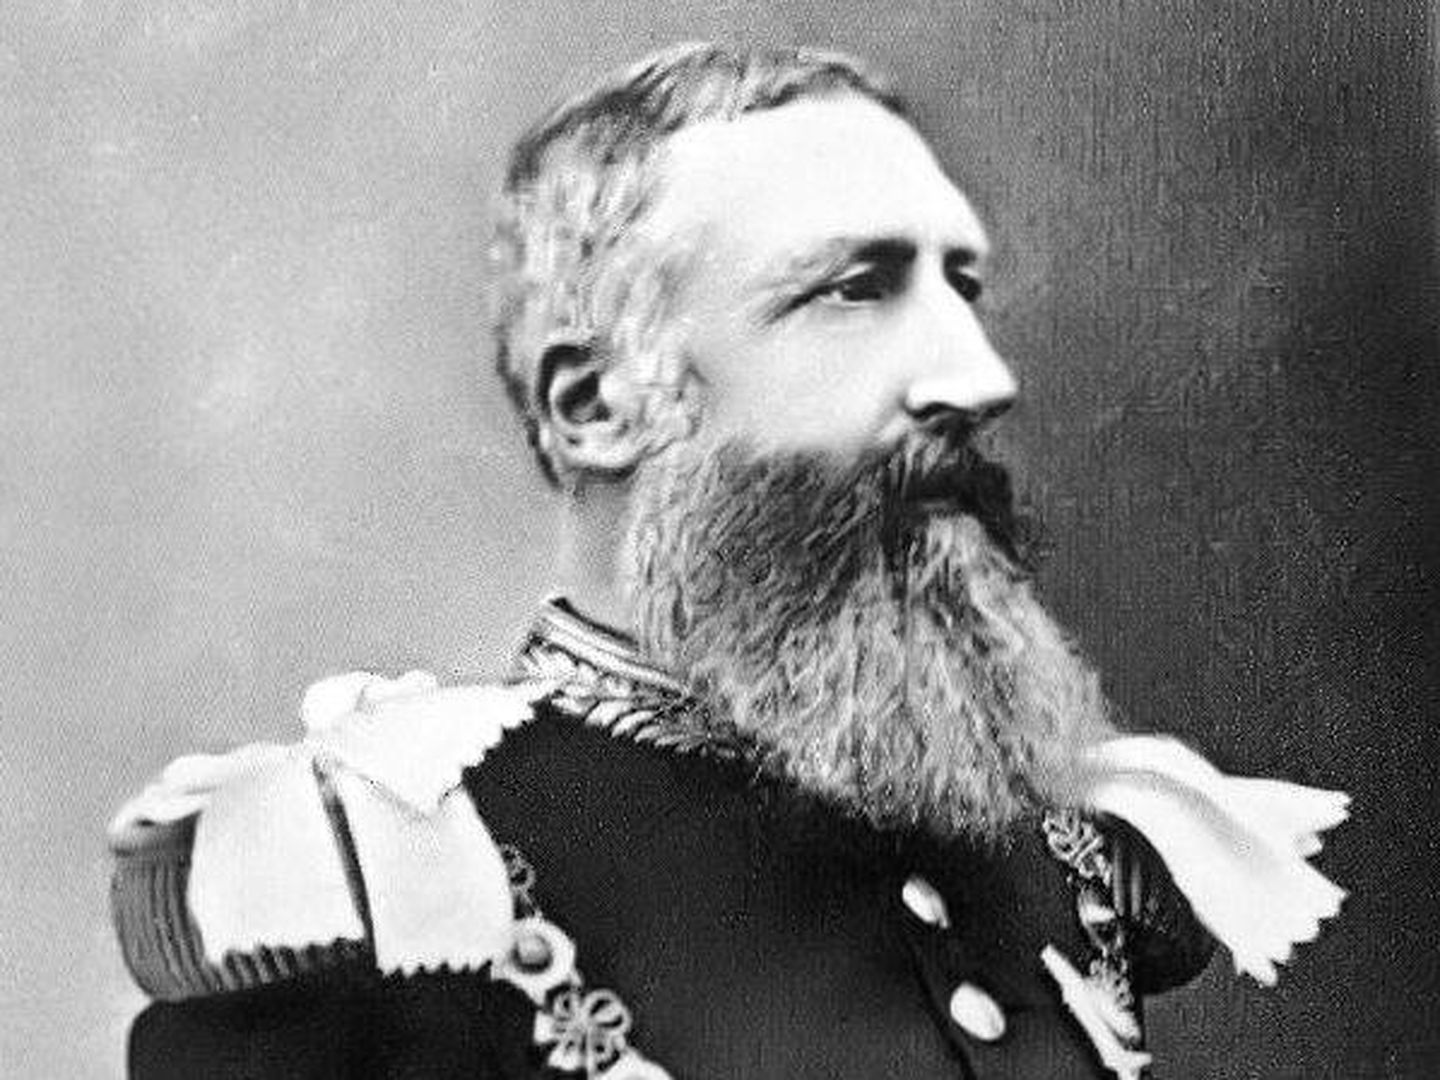 Leopoldo II de Bélgica, responsable del genocidio del Congo